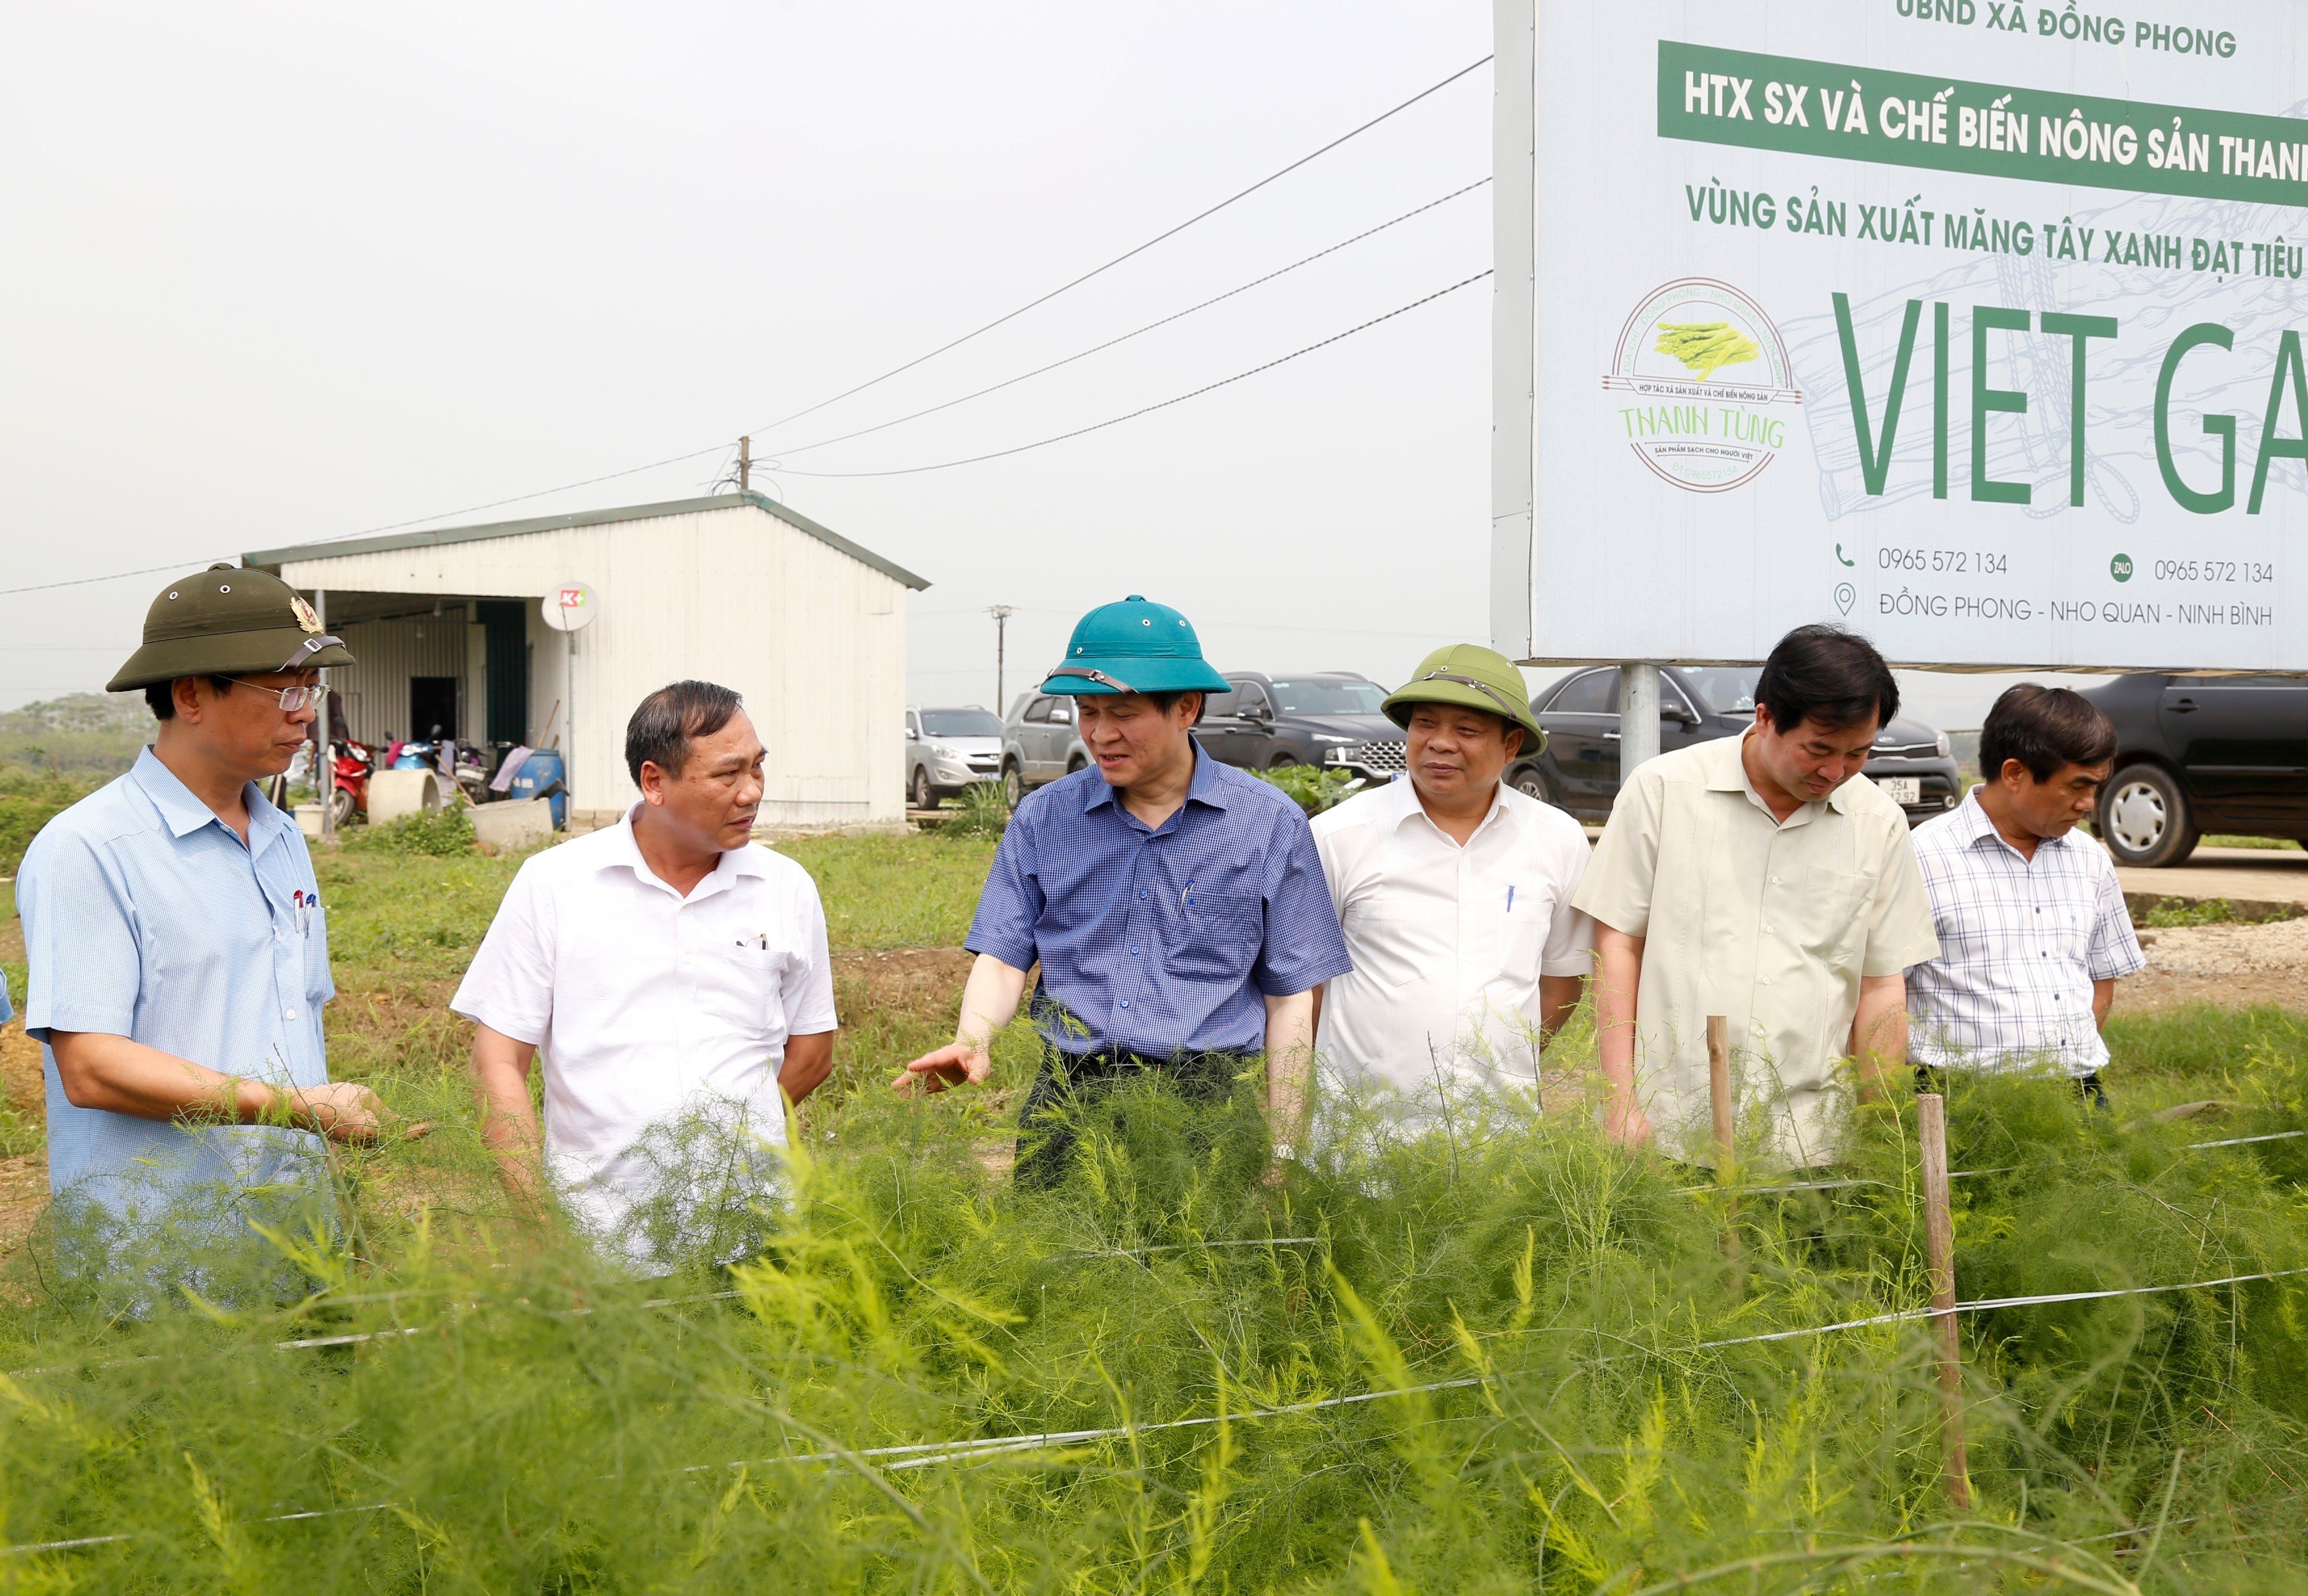 Đồng chí Bí thư Tỉnh ủy làm việc tại xã Đồng Phong, huyện Nho Quan:  Nắm bắt tình hình xây dựng Nông thôn mới trên địa bàn